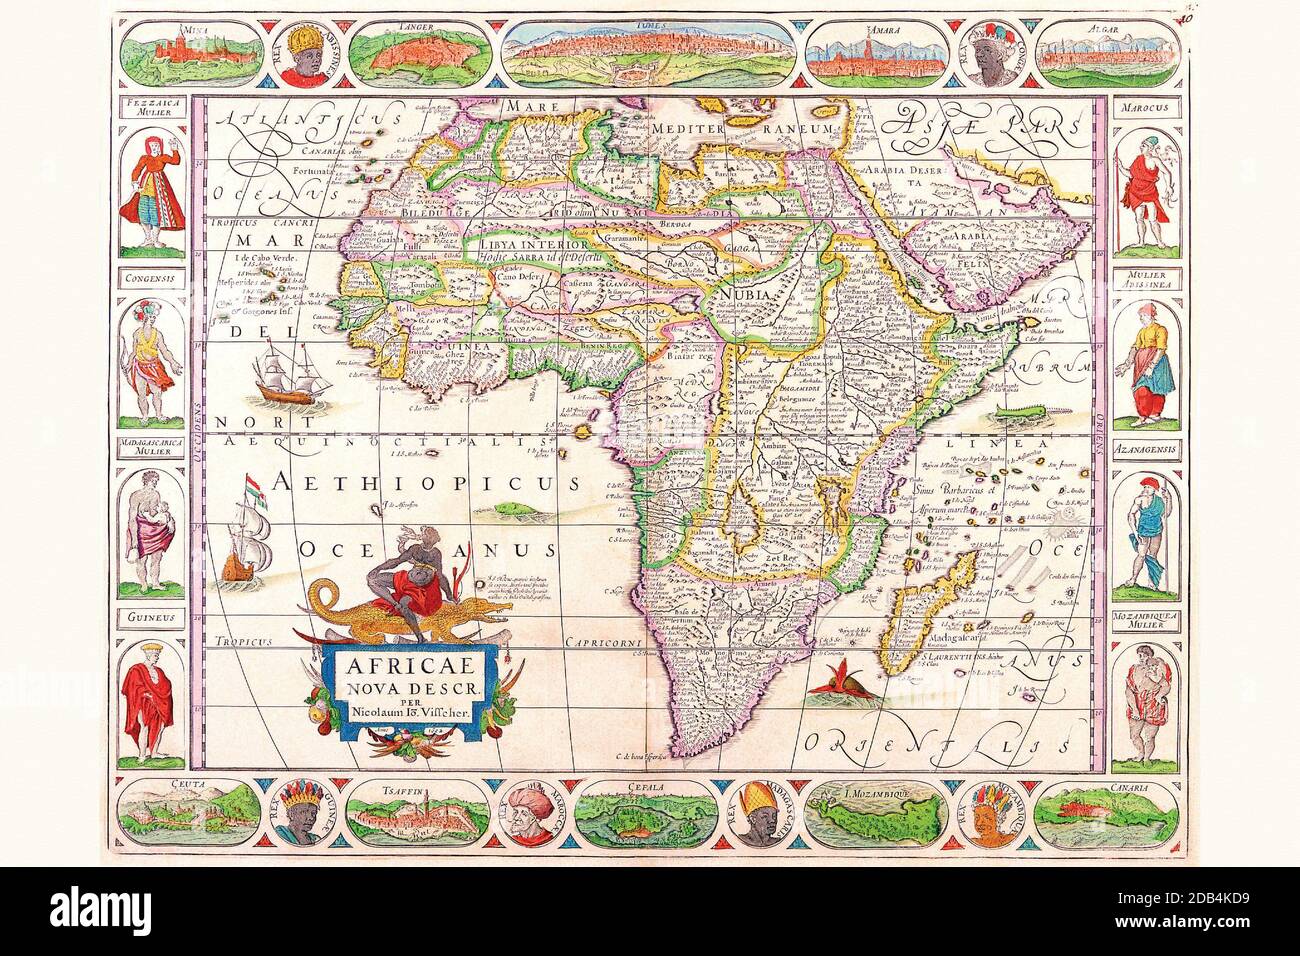 La famille Visscher était la force dominante dans la cartographie au plus fort de l'âge d'or de la cartographie néerlandaise. Ils étaient connus dans toute l'Europe pour leur connaissance géographique avancée et pour l'ornementation artistique de leurs œuvres. Ils ont été l'un des principaux éditeurs d'Amsterdam pendant près d'un siècle. Banque D'Images